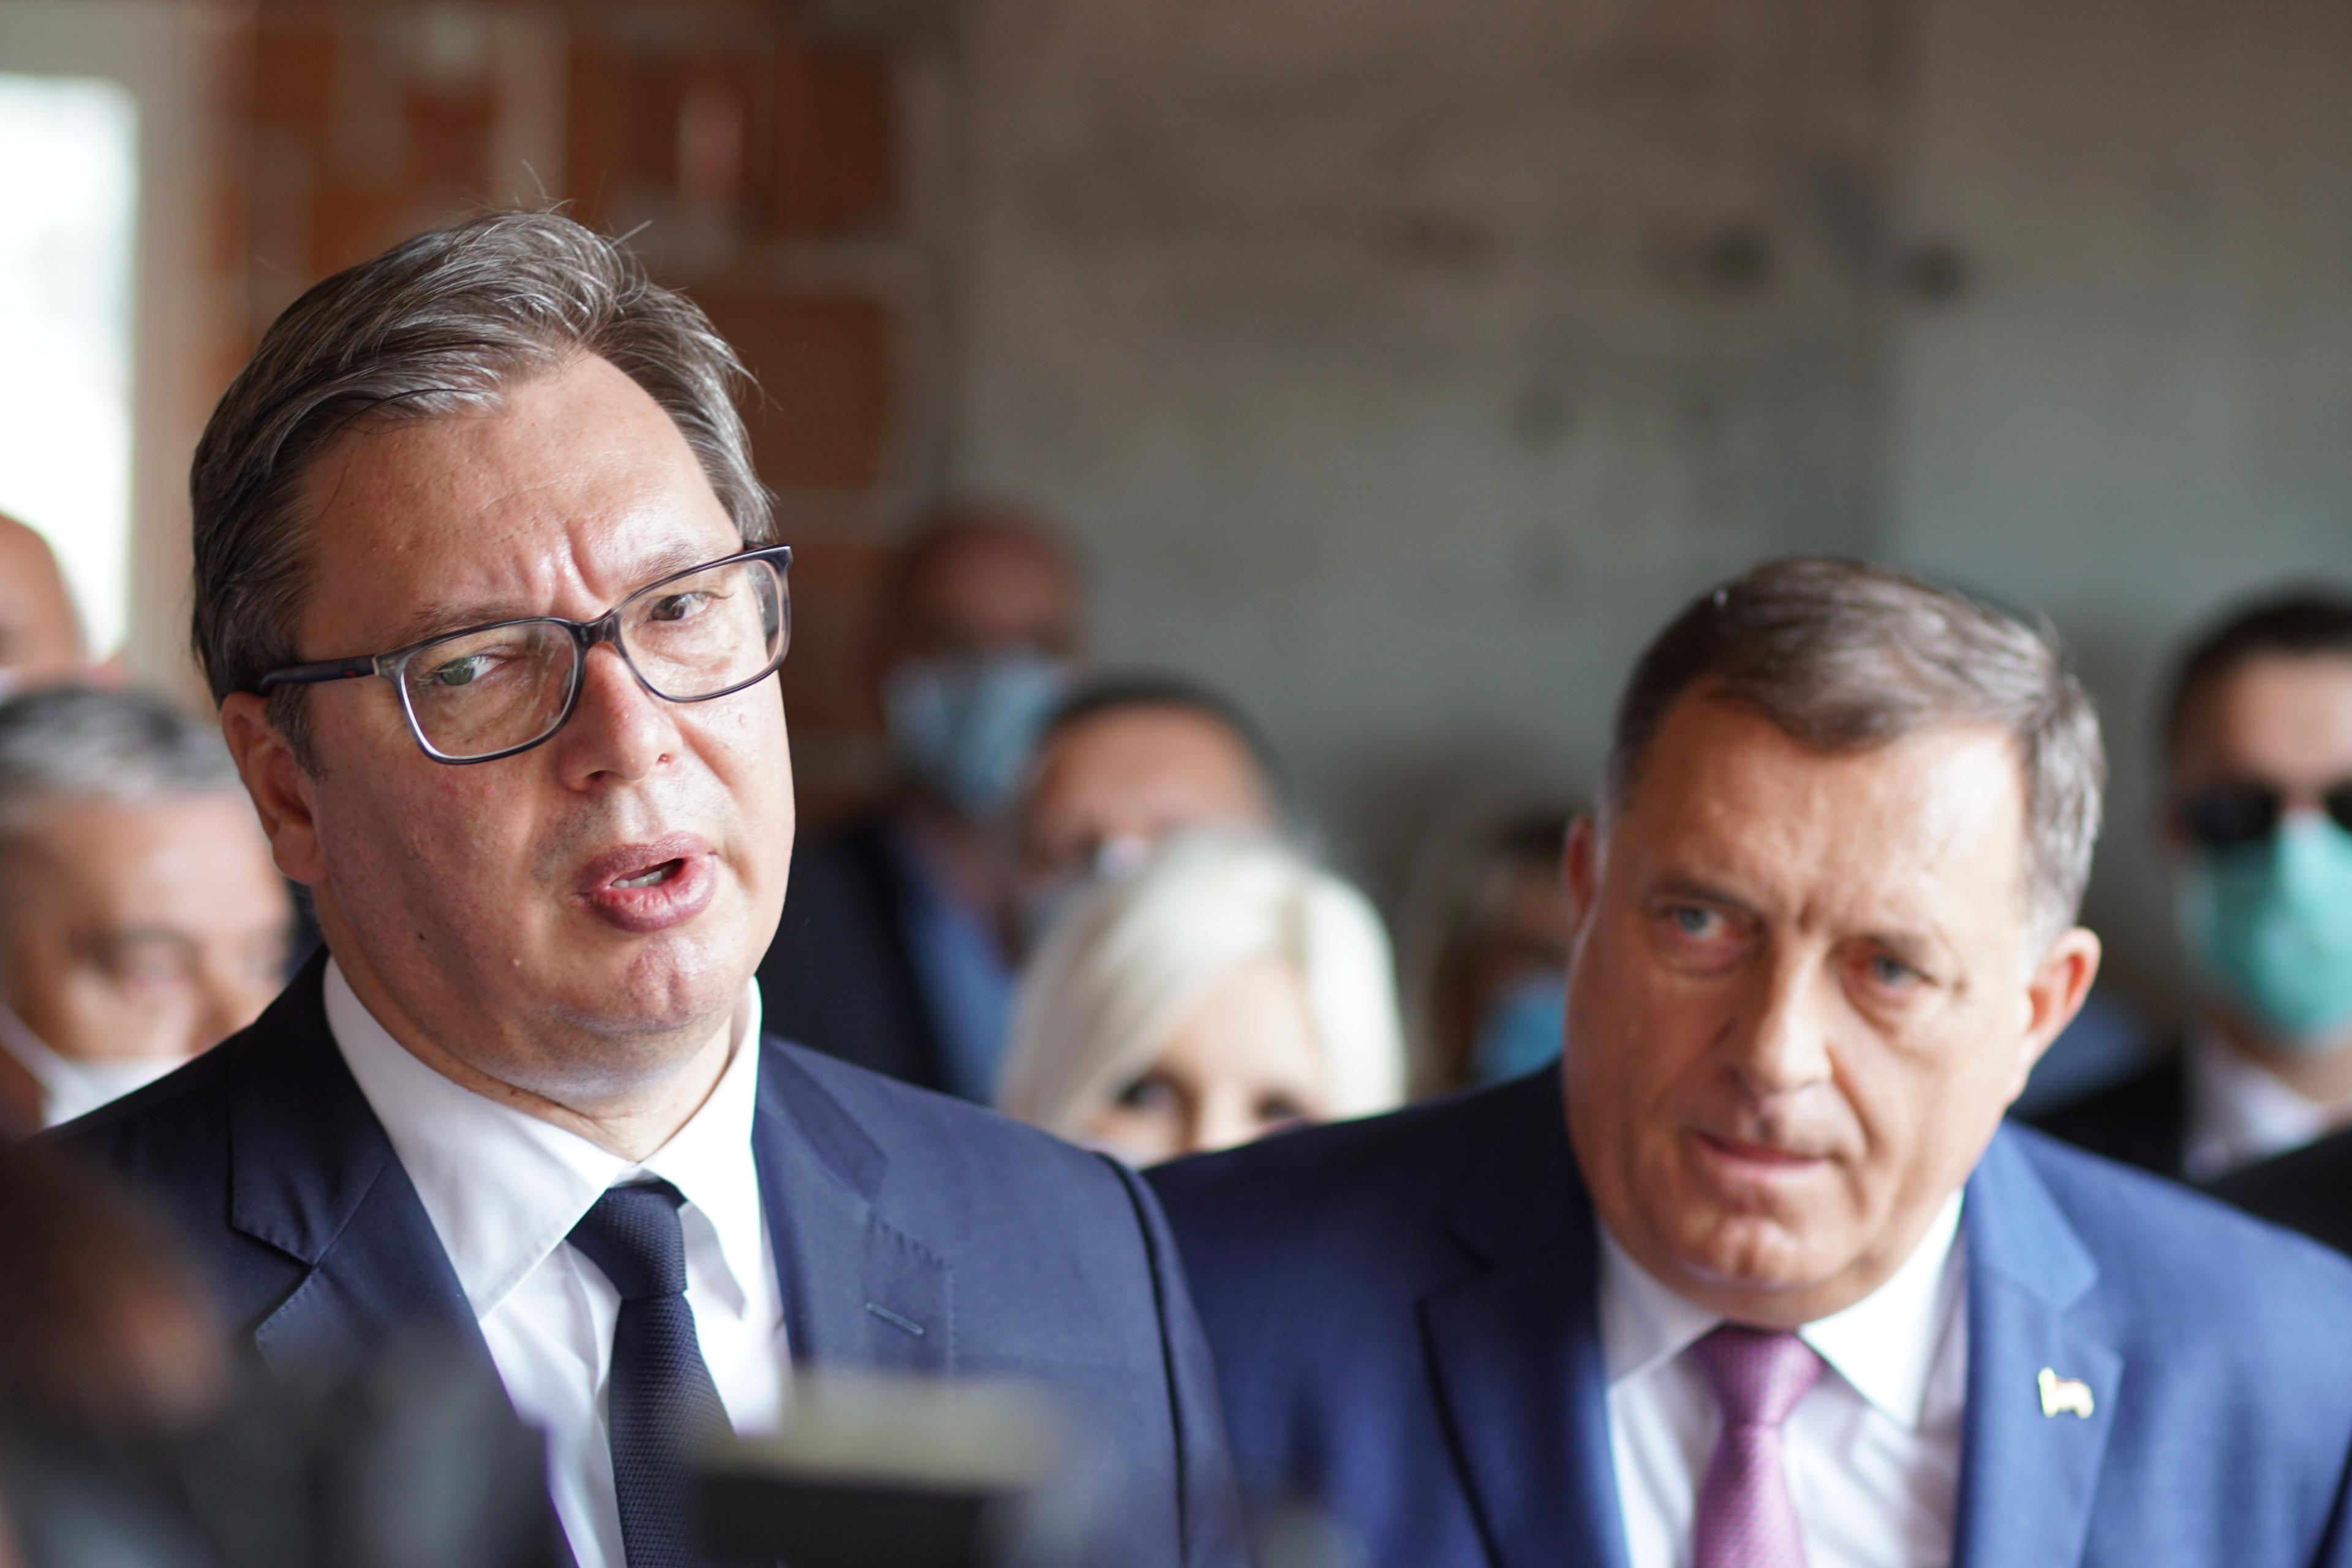 Vučić i Dodik - Avaz